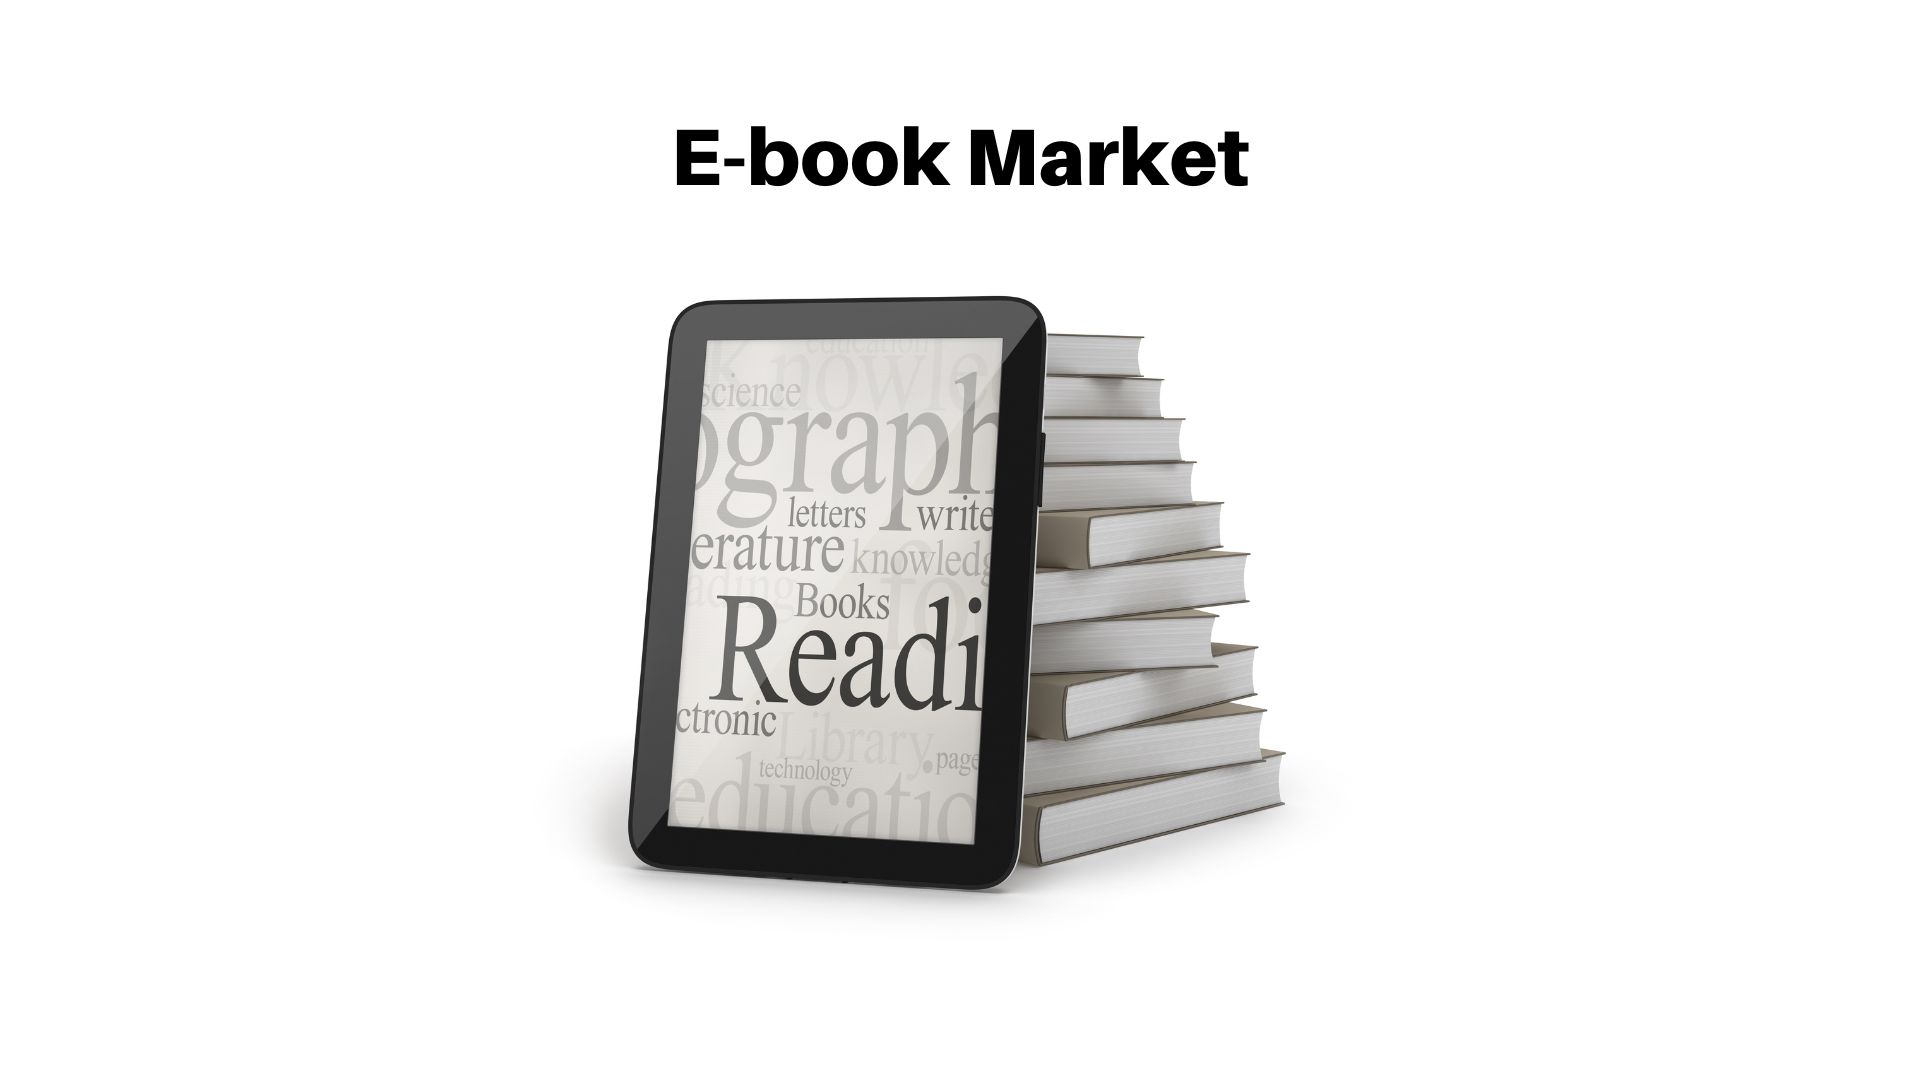 E-book Market’s Leading Vendors, Amazon, Apple, McGraw Hill and More